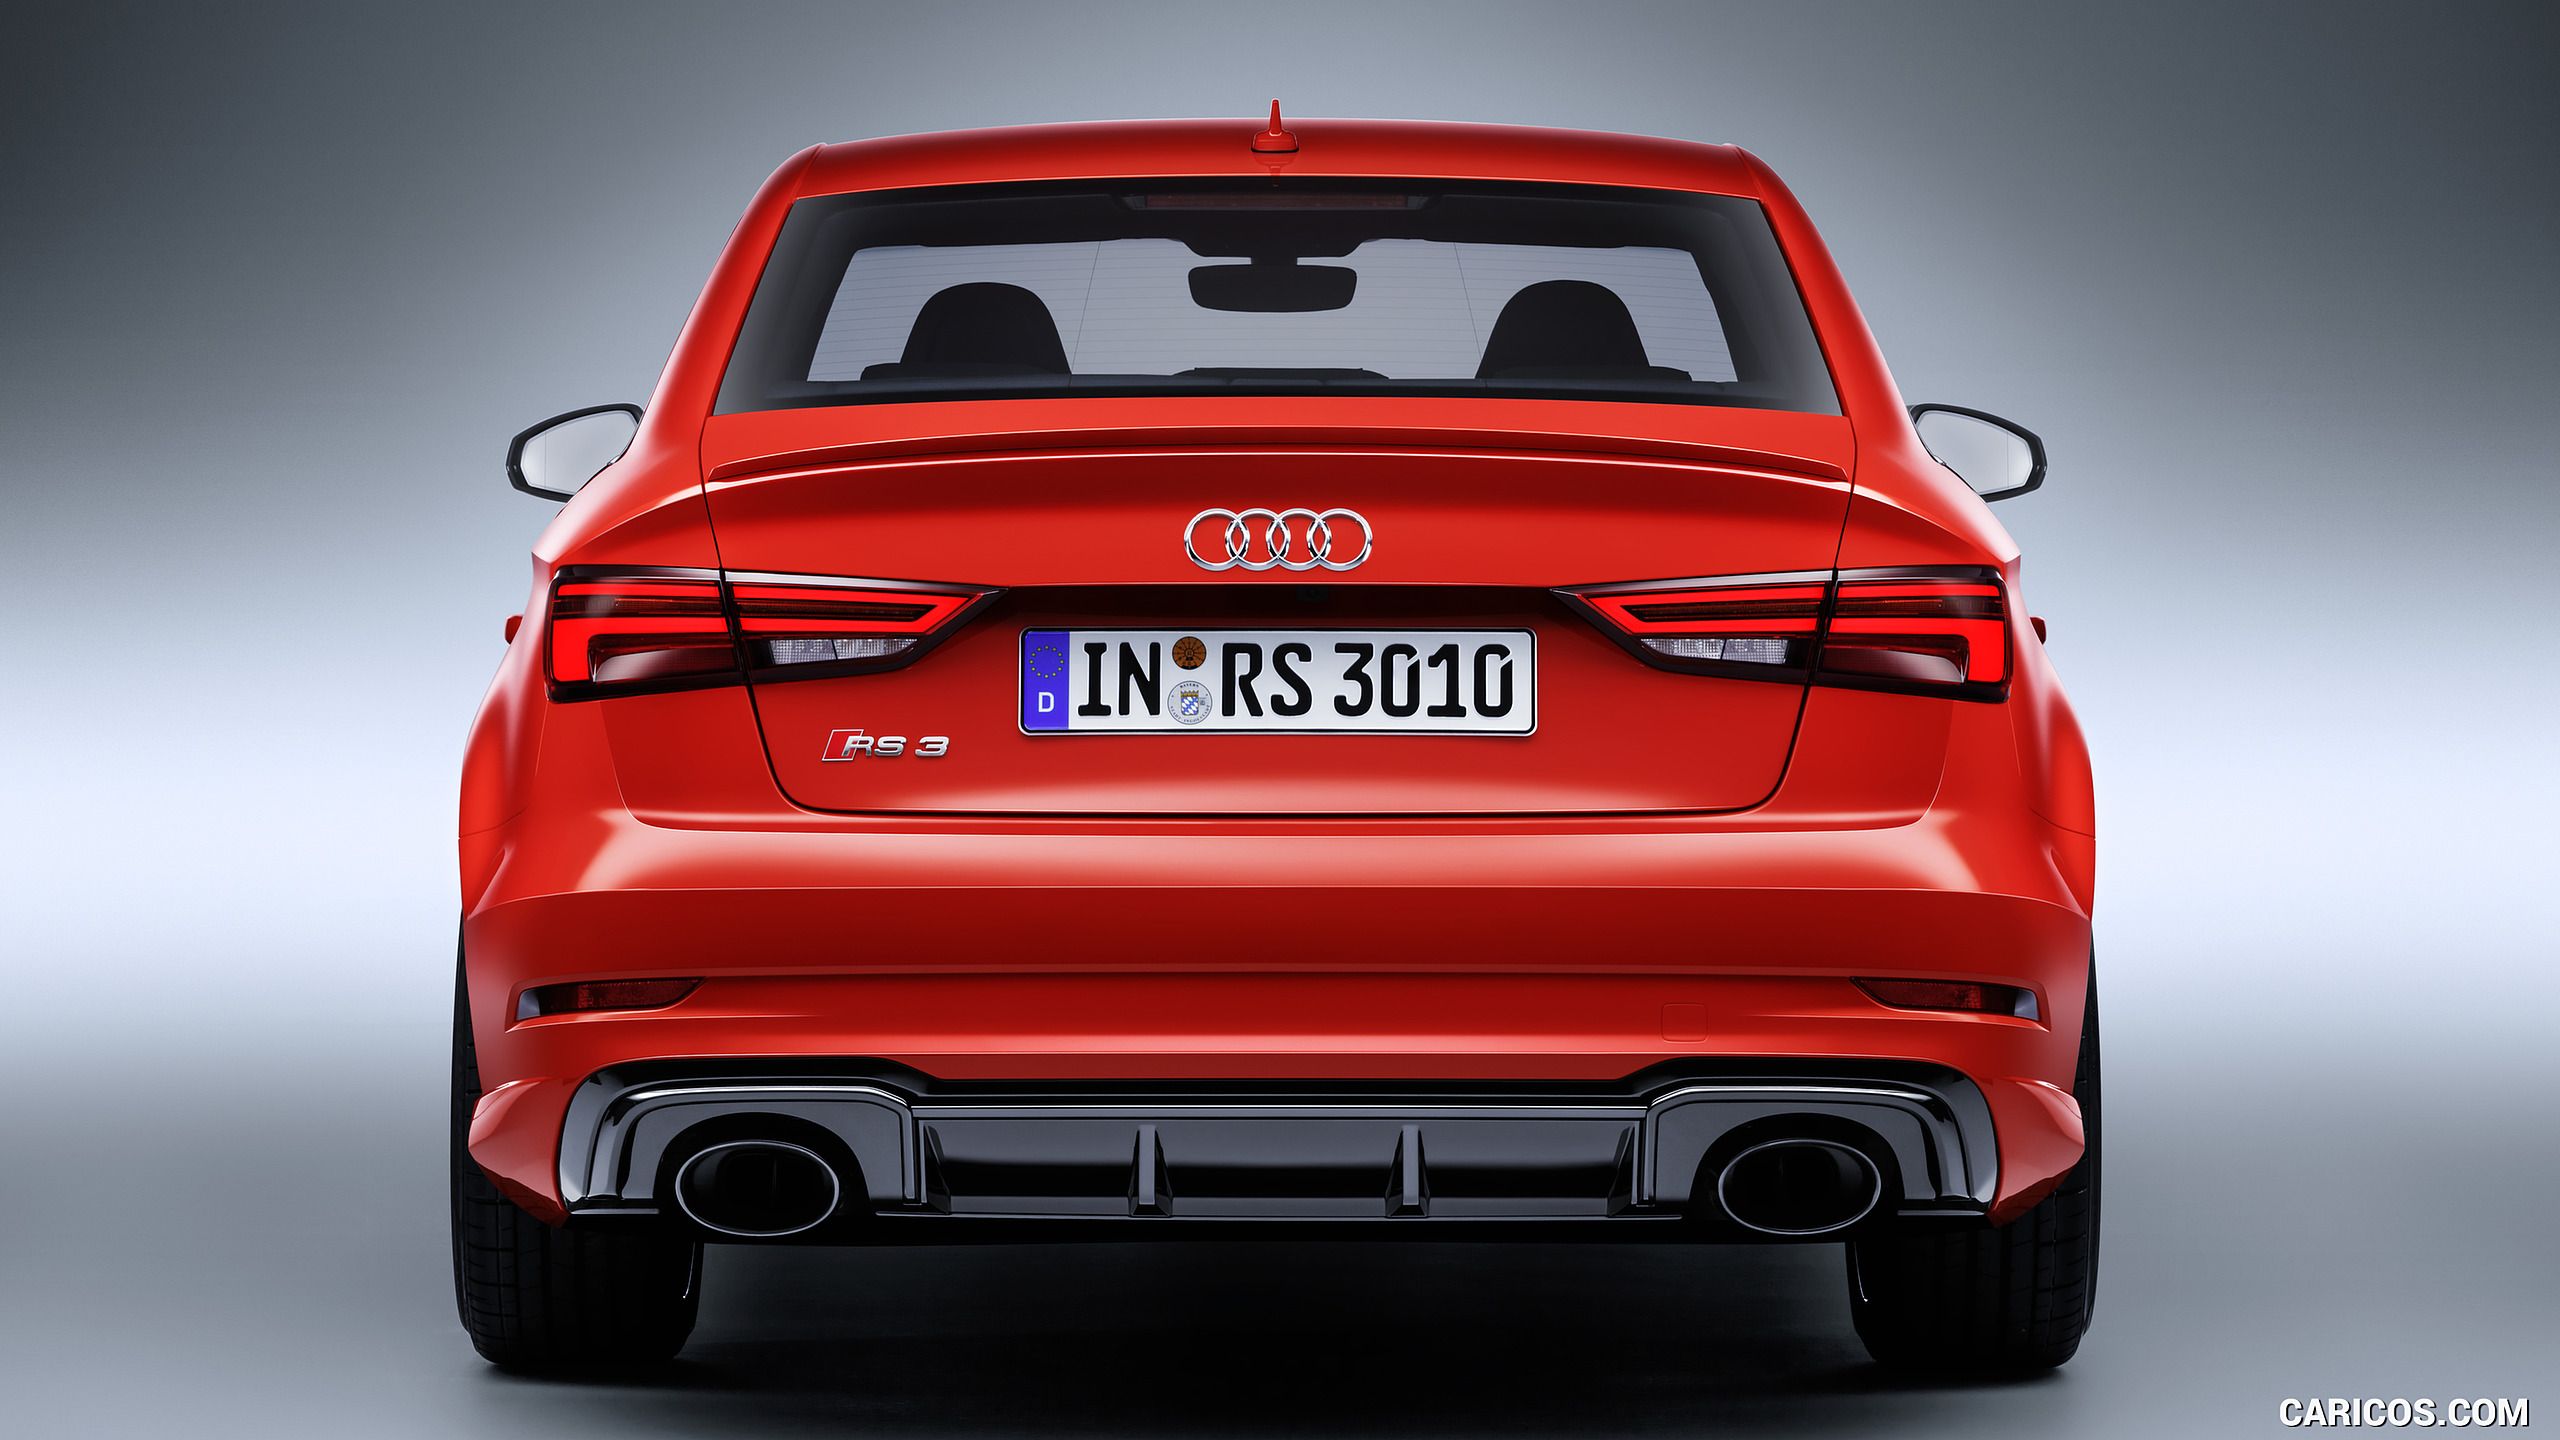 Audi Rs3 Wallpaper - Audi A3 2018 Vs 2019 , HD Wallpaper & Backgrounds